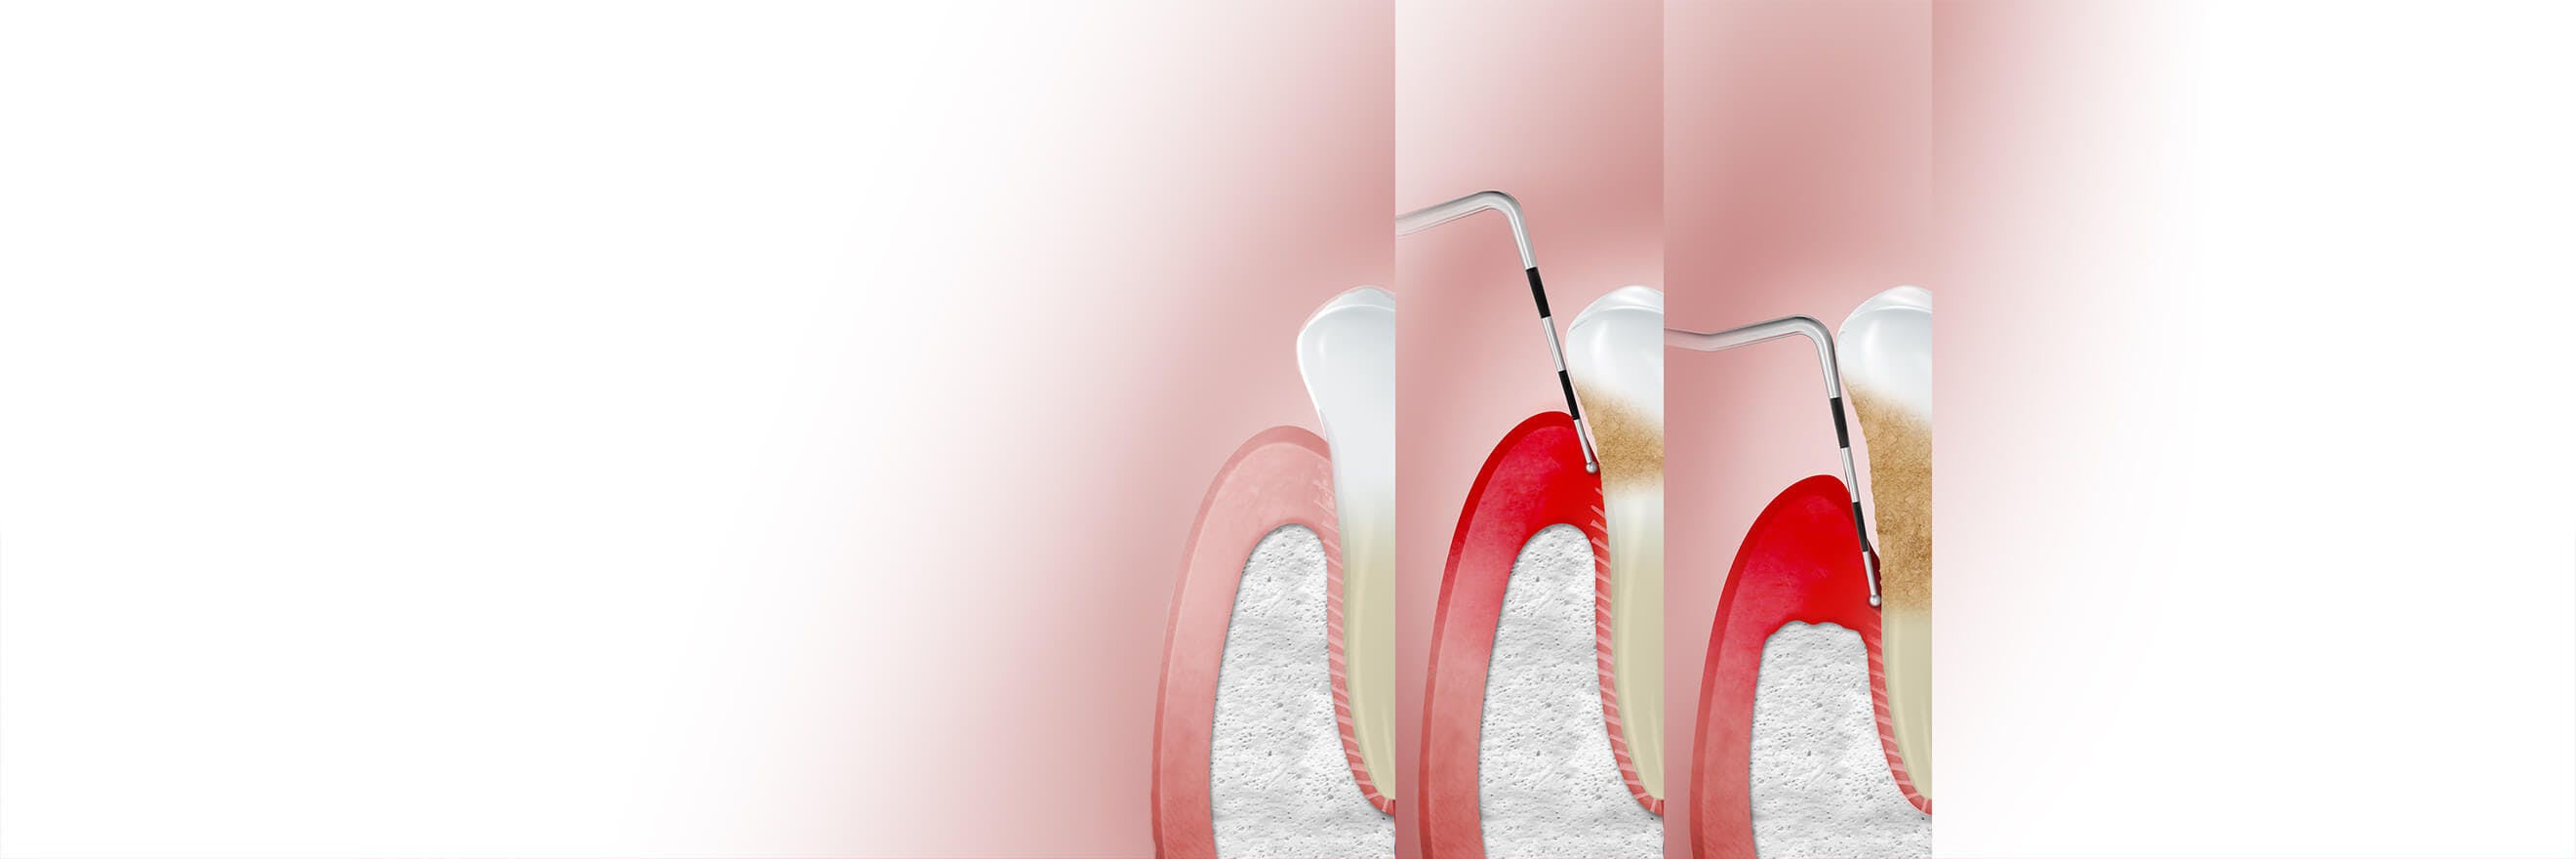 Abbildung wie Gingivitis das Zahnfleisch betrifft mit dem Label "Stufen"